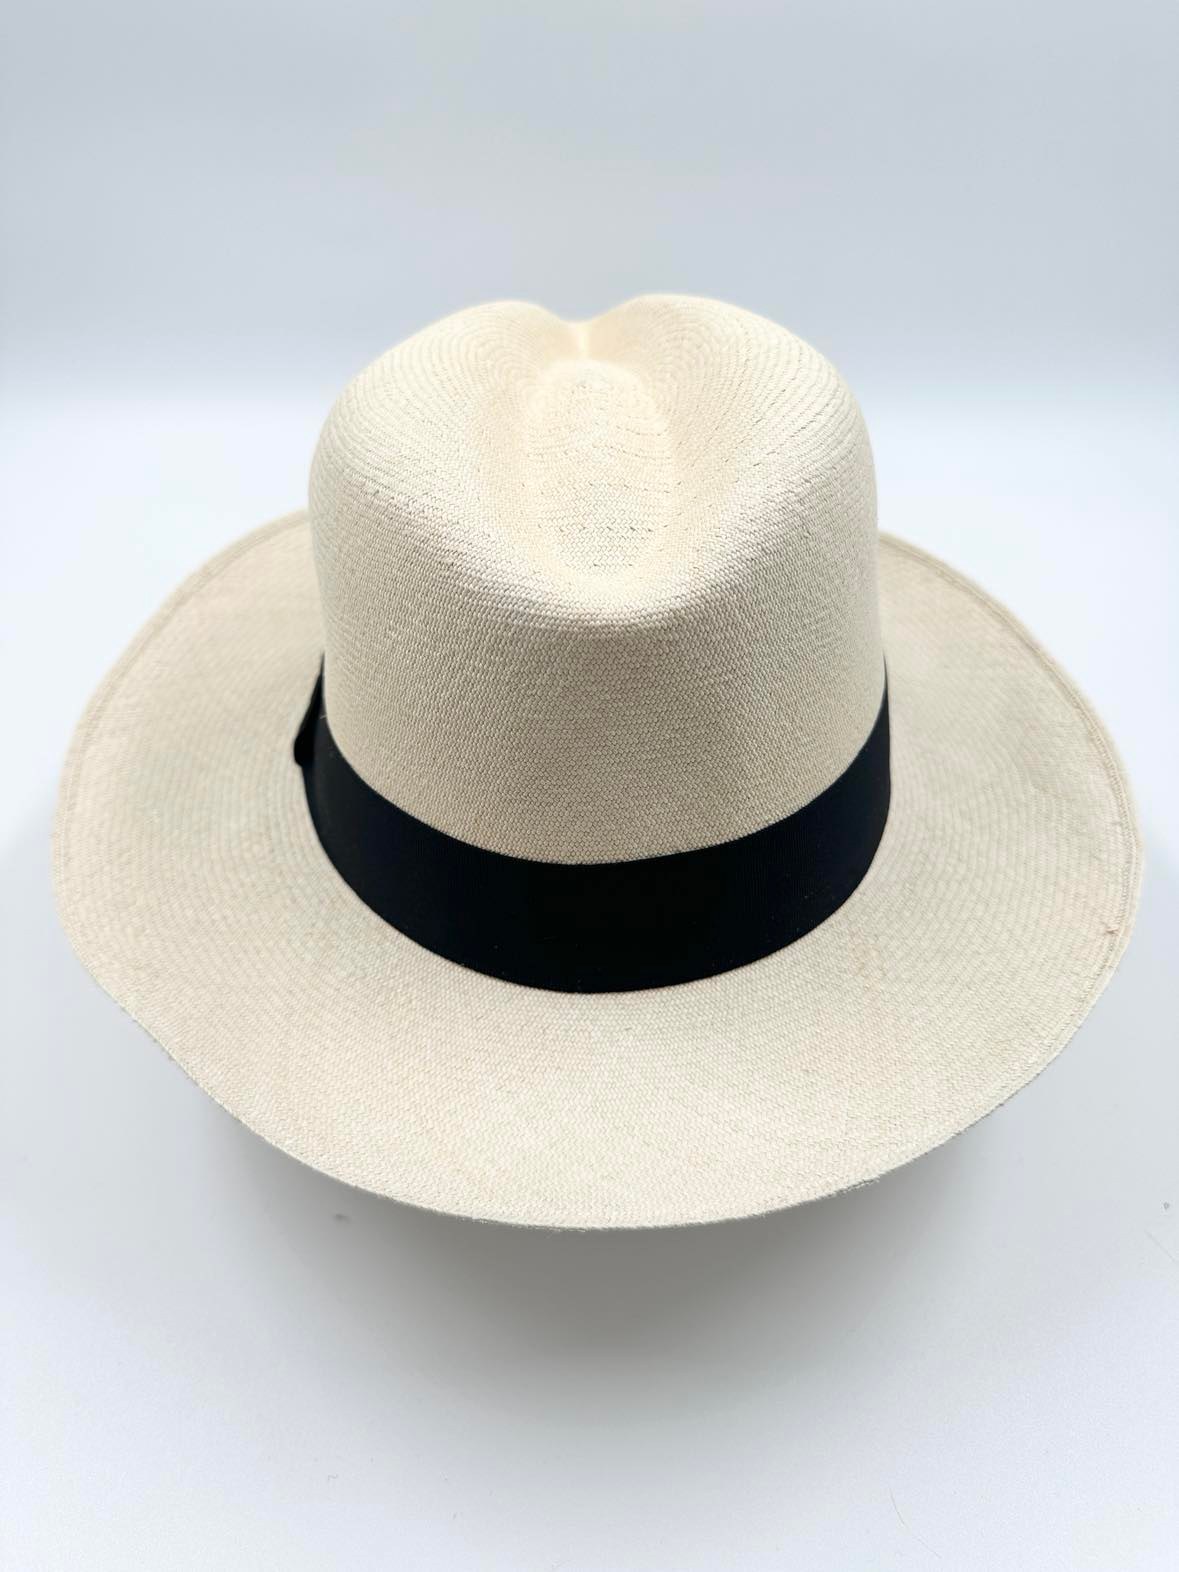 Ægte Montecristi Fedora Panama Hat med en kvalitet på 19-20 fletninger pr. inch - håndflettes efter gamle traditioner